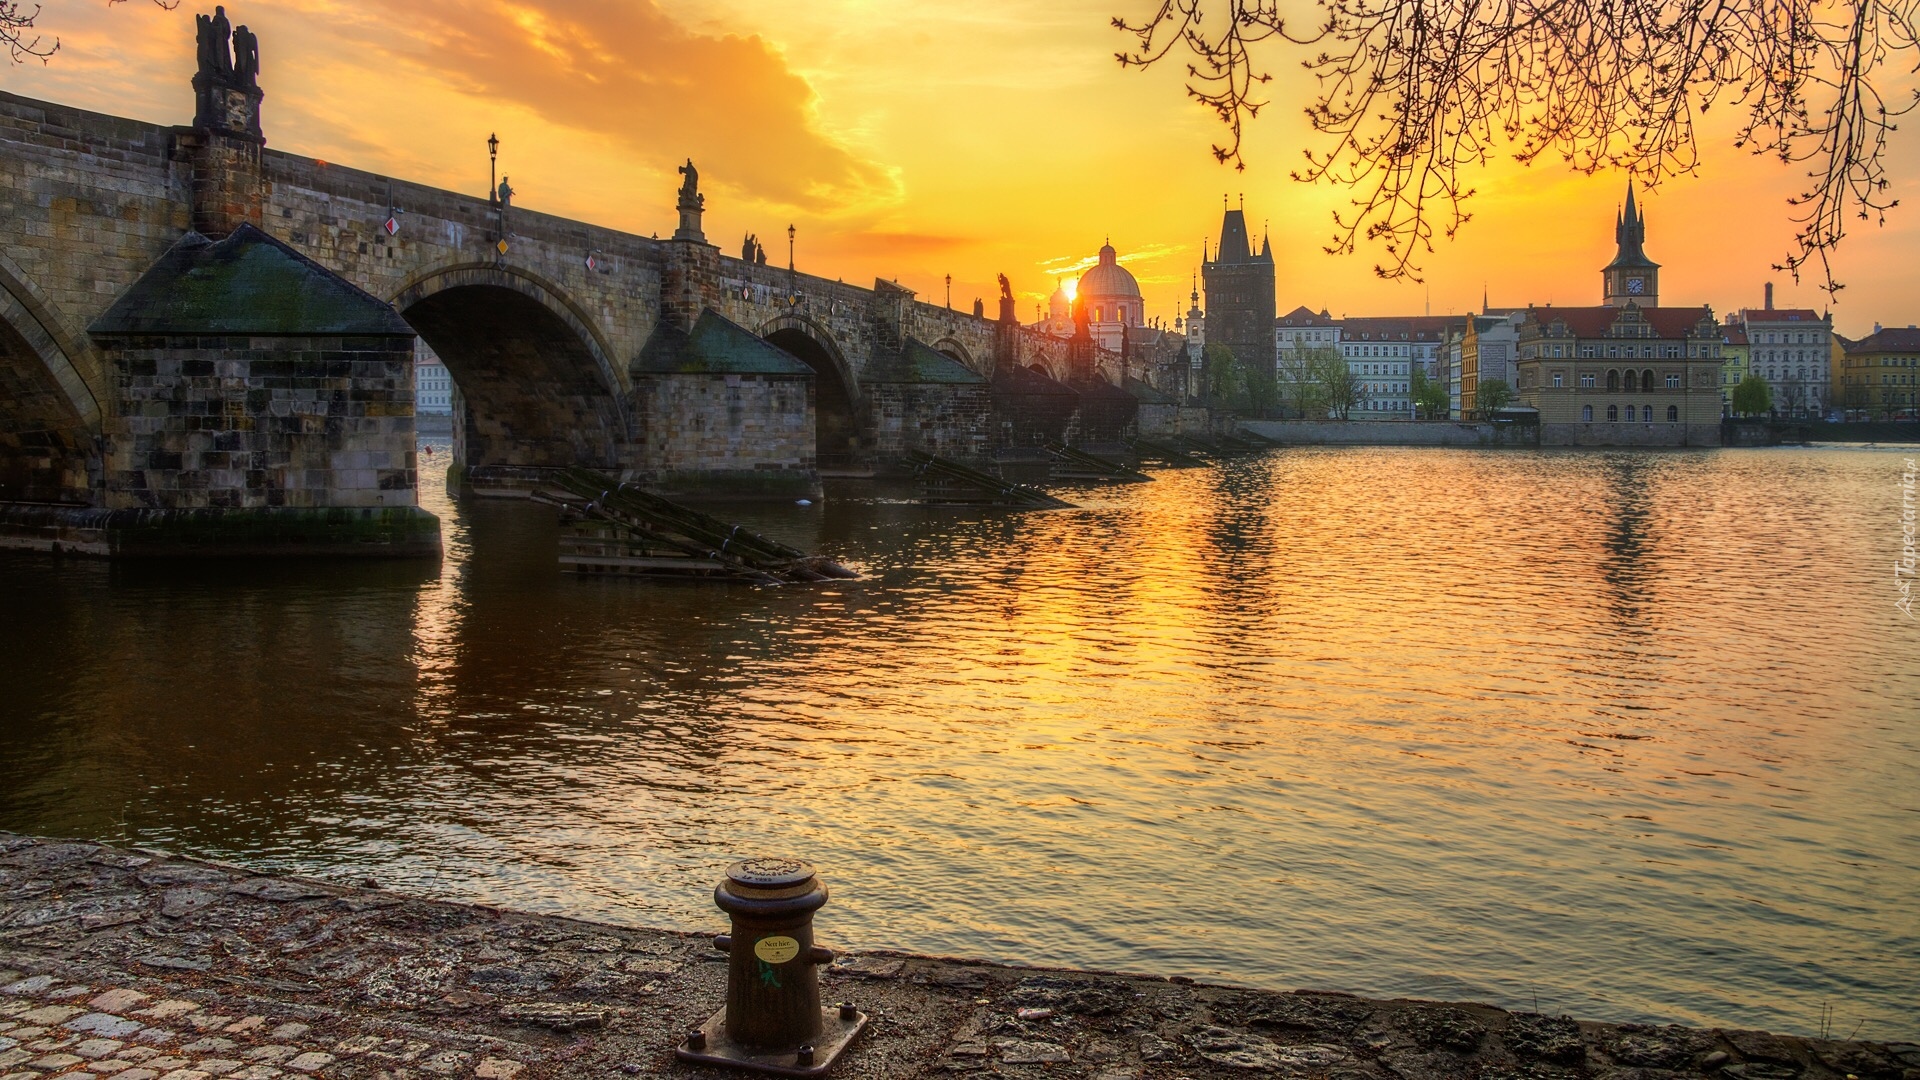 Rzeka Wełtawa, Most Karola, Zachód słońca, Praga, Czechy